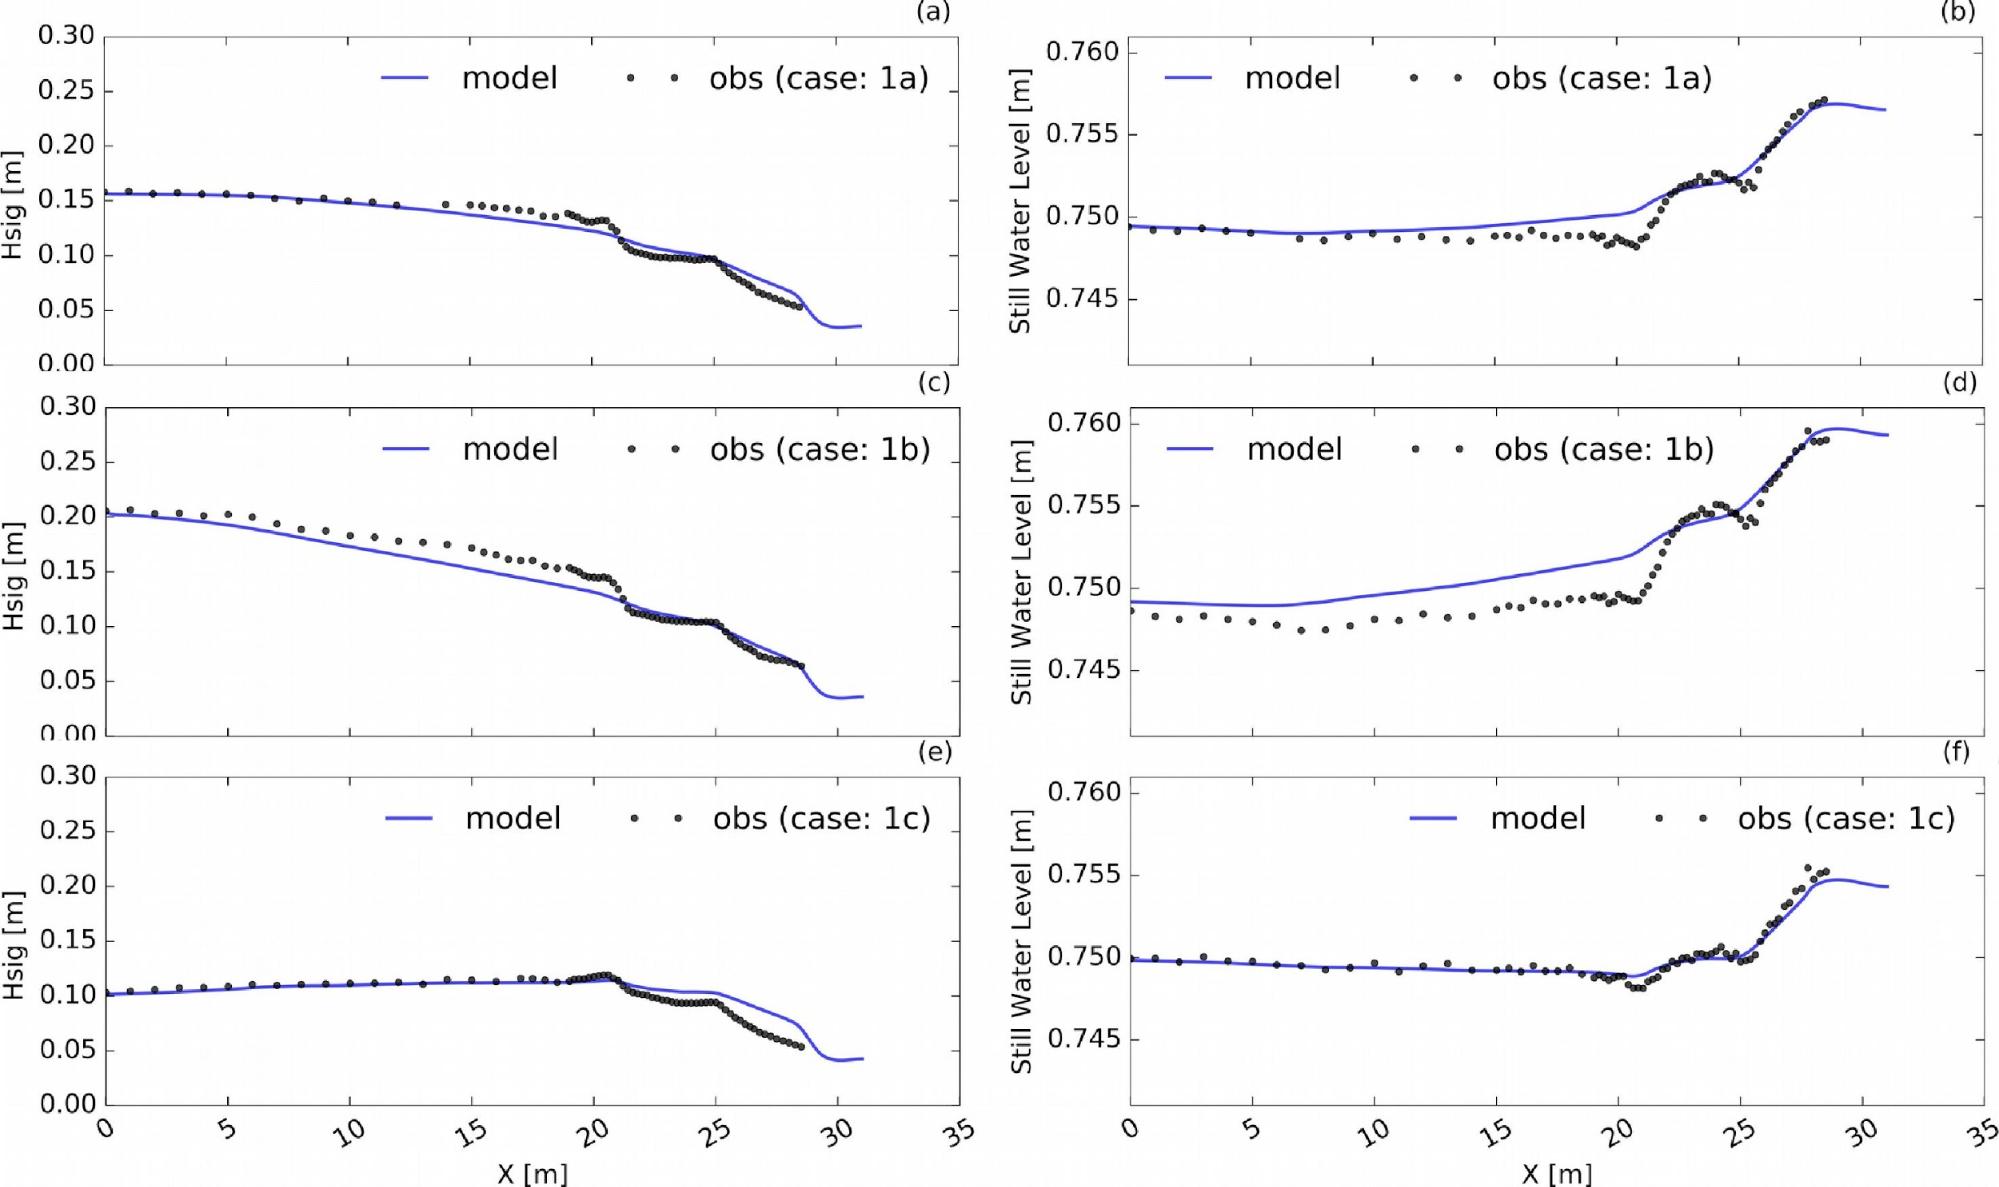 Model data comparison